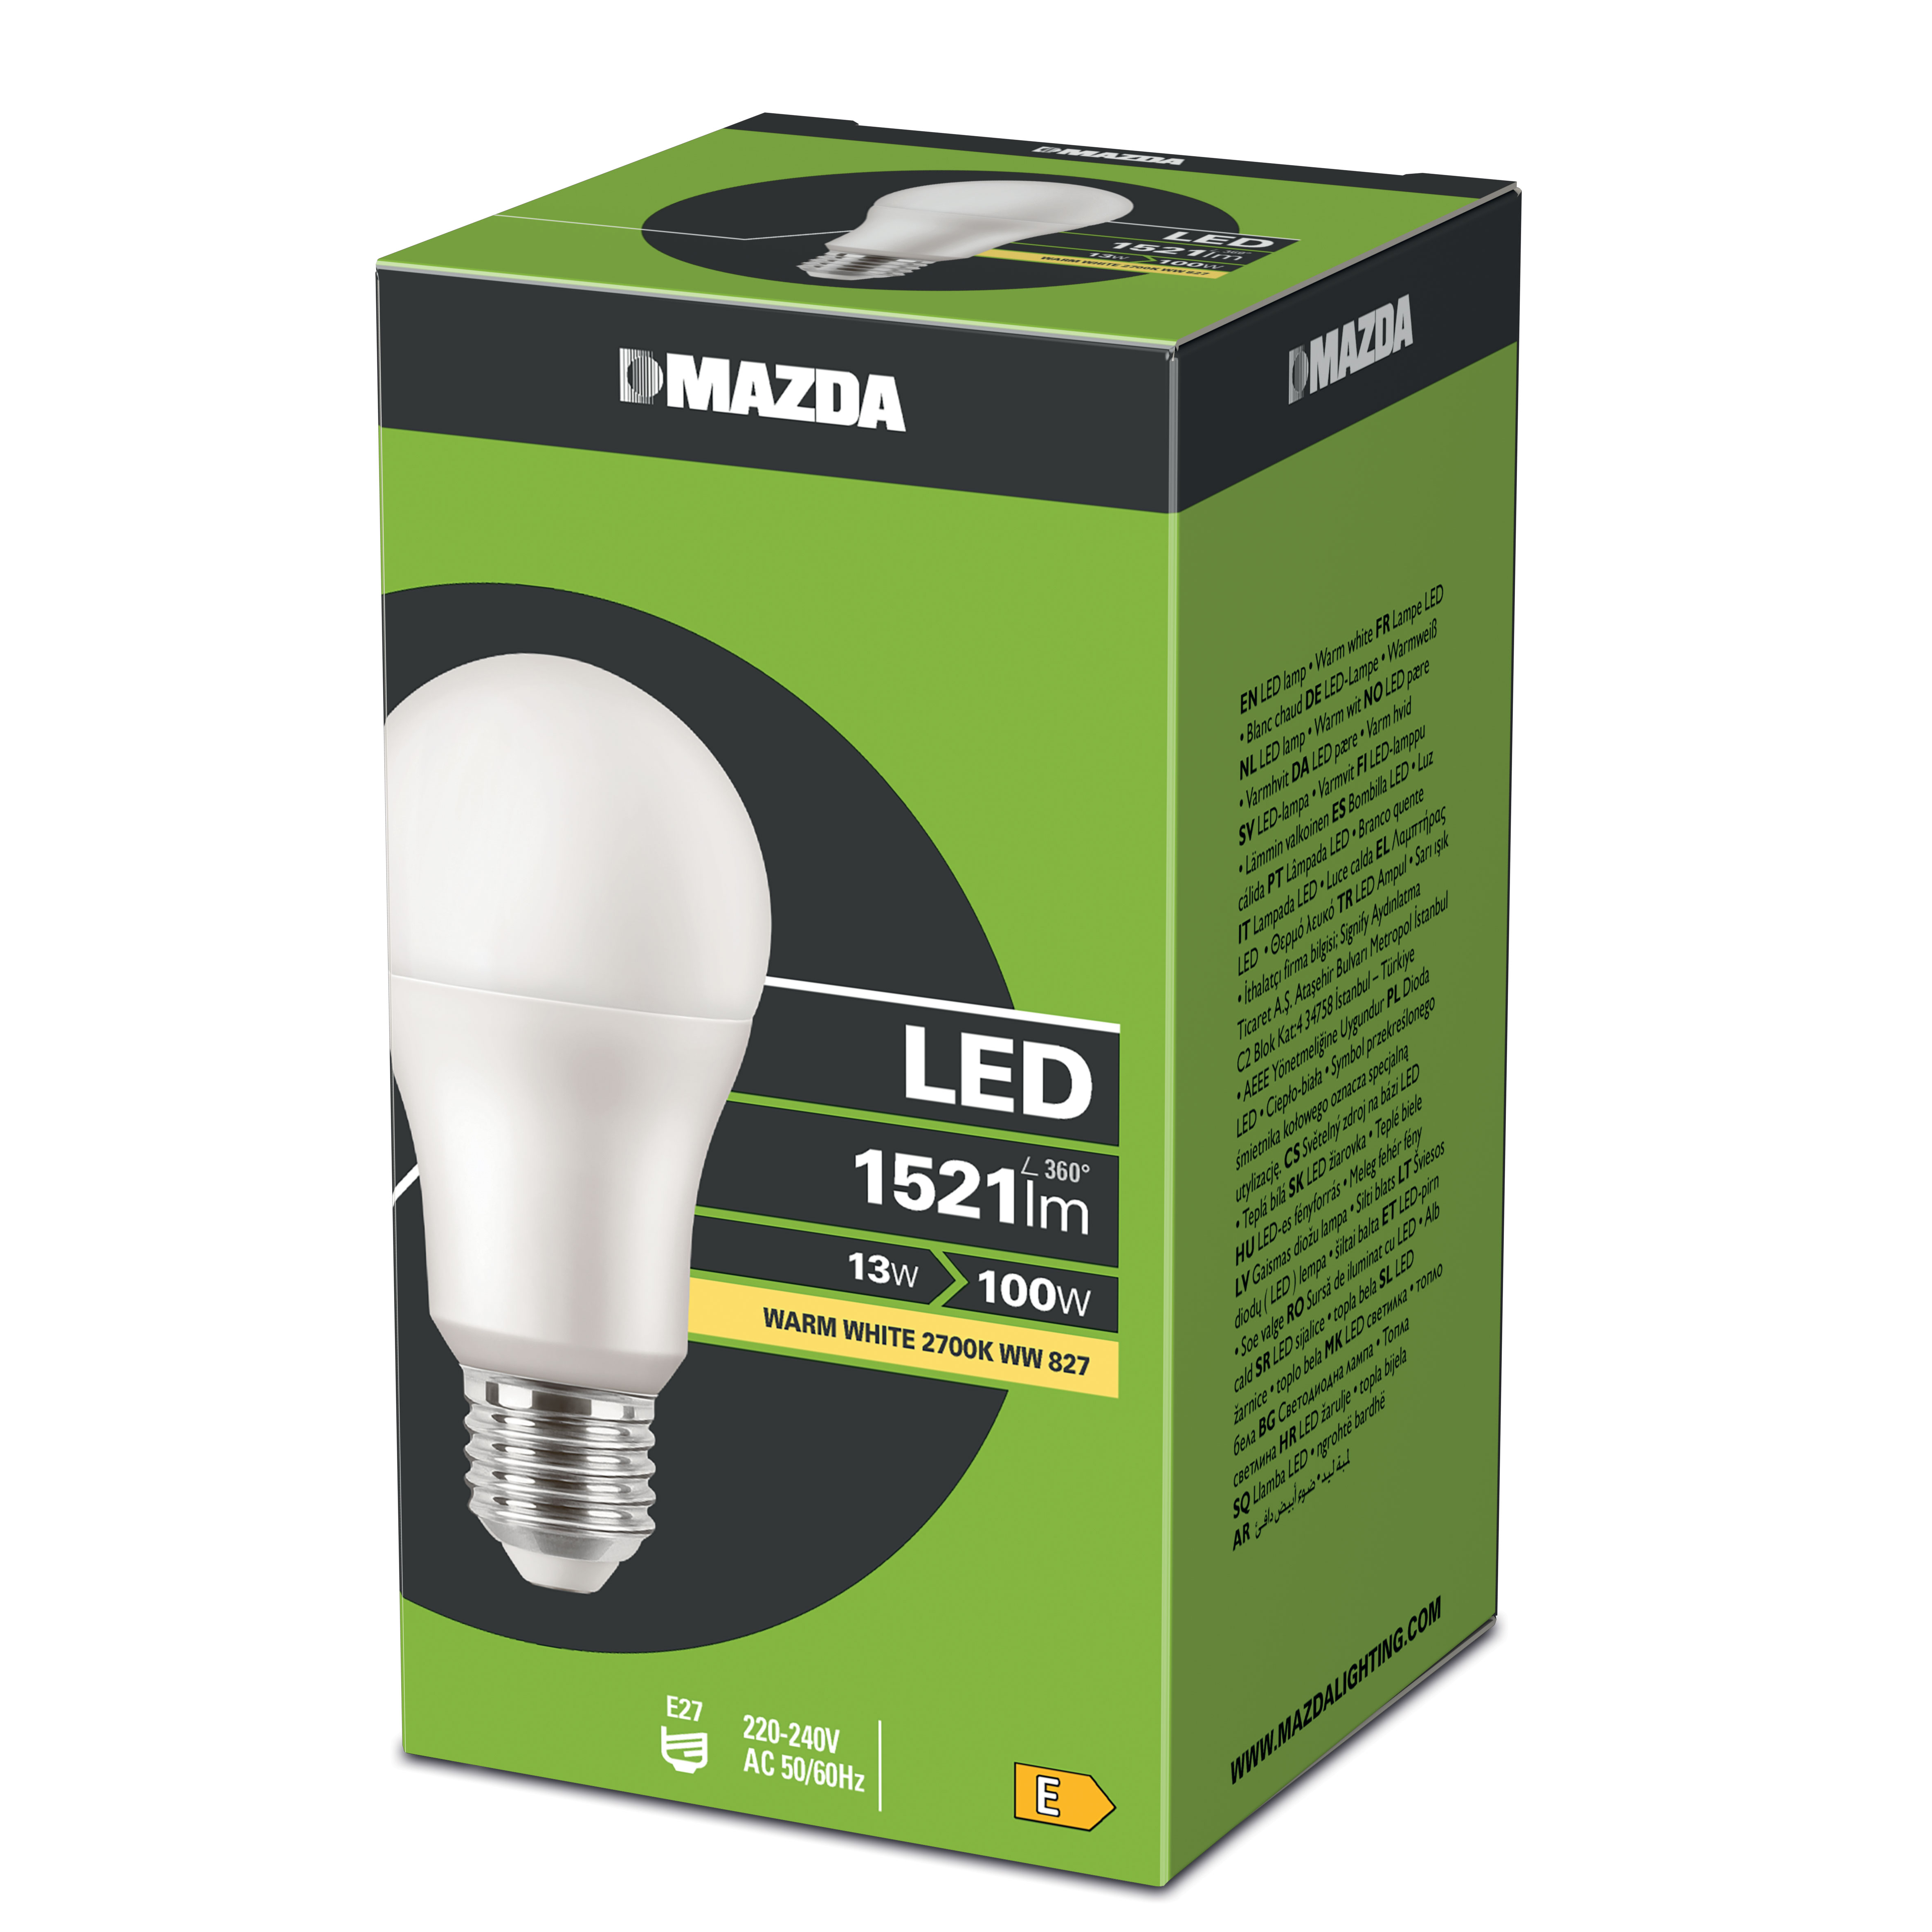 MAZDA LED LAMP 100W E27 WARM WHITE 2700K 827 